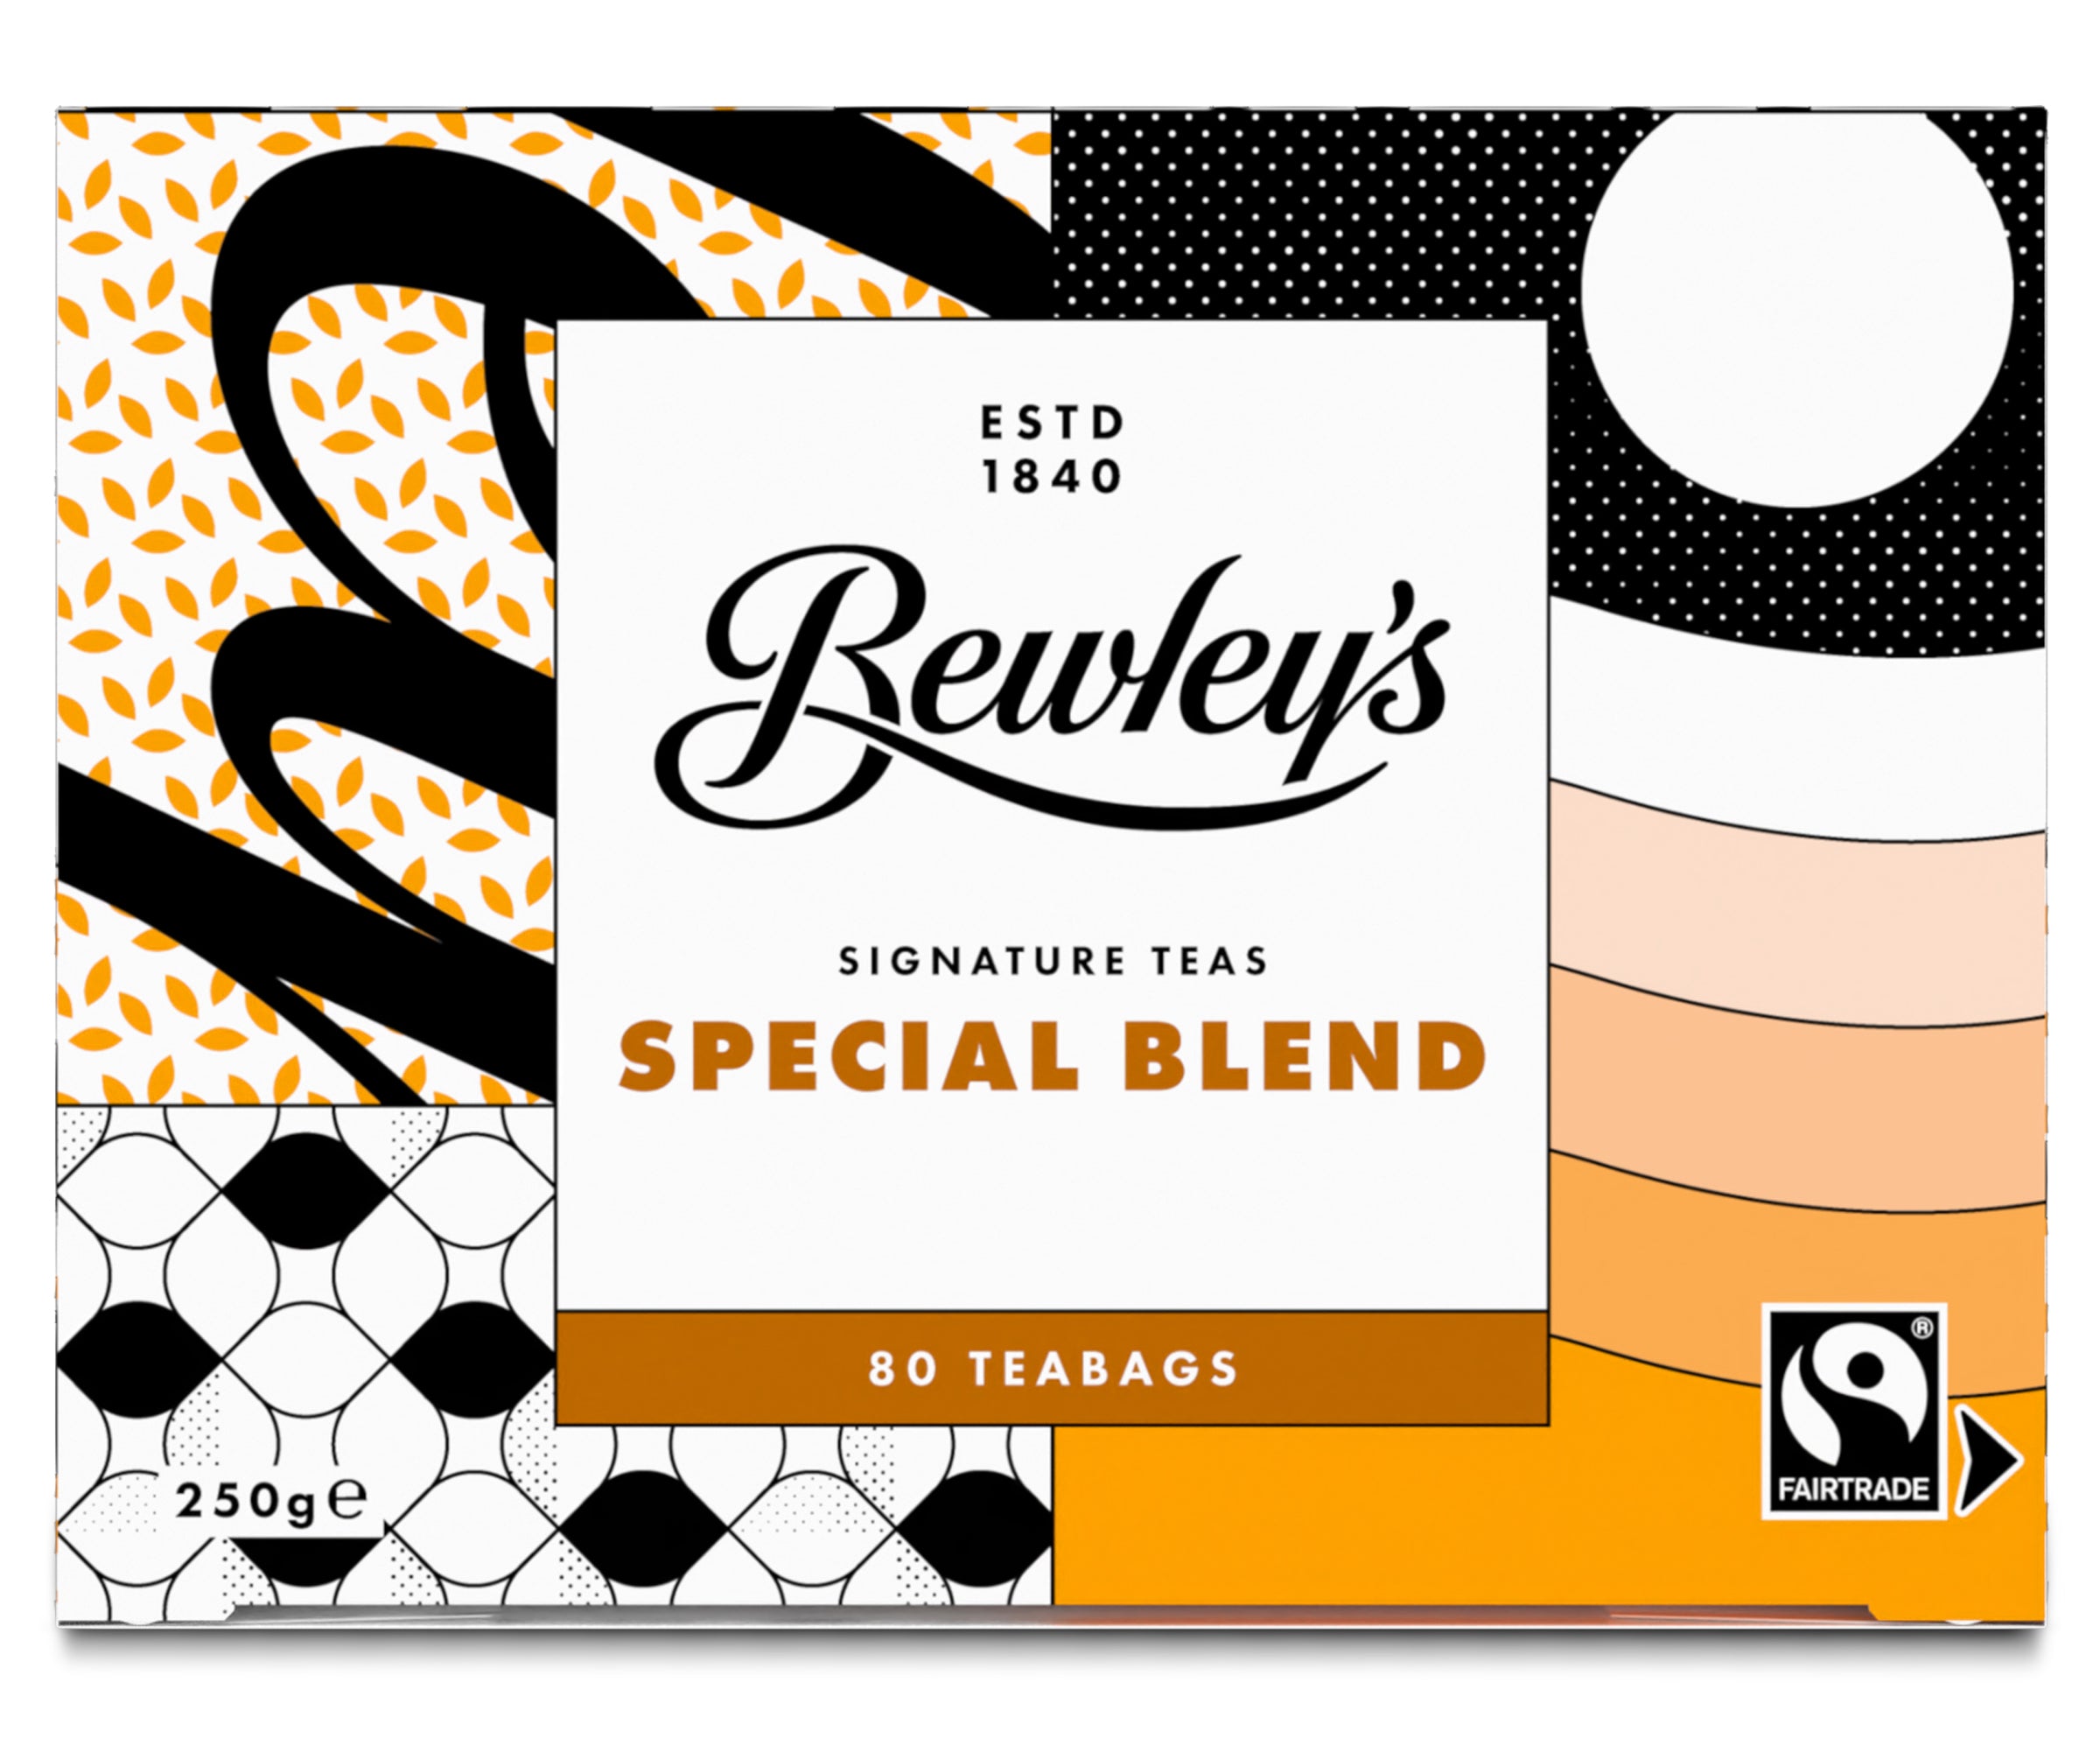 Bewley's Special Blend Fairtrade - Bewley's Tea & Coffee